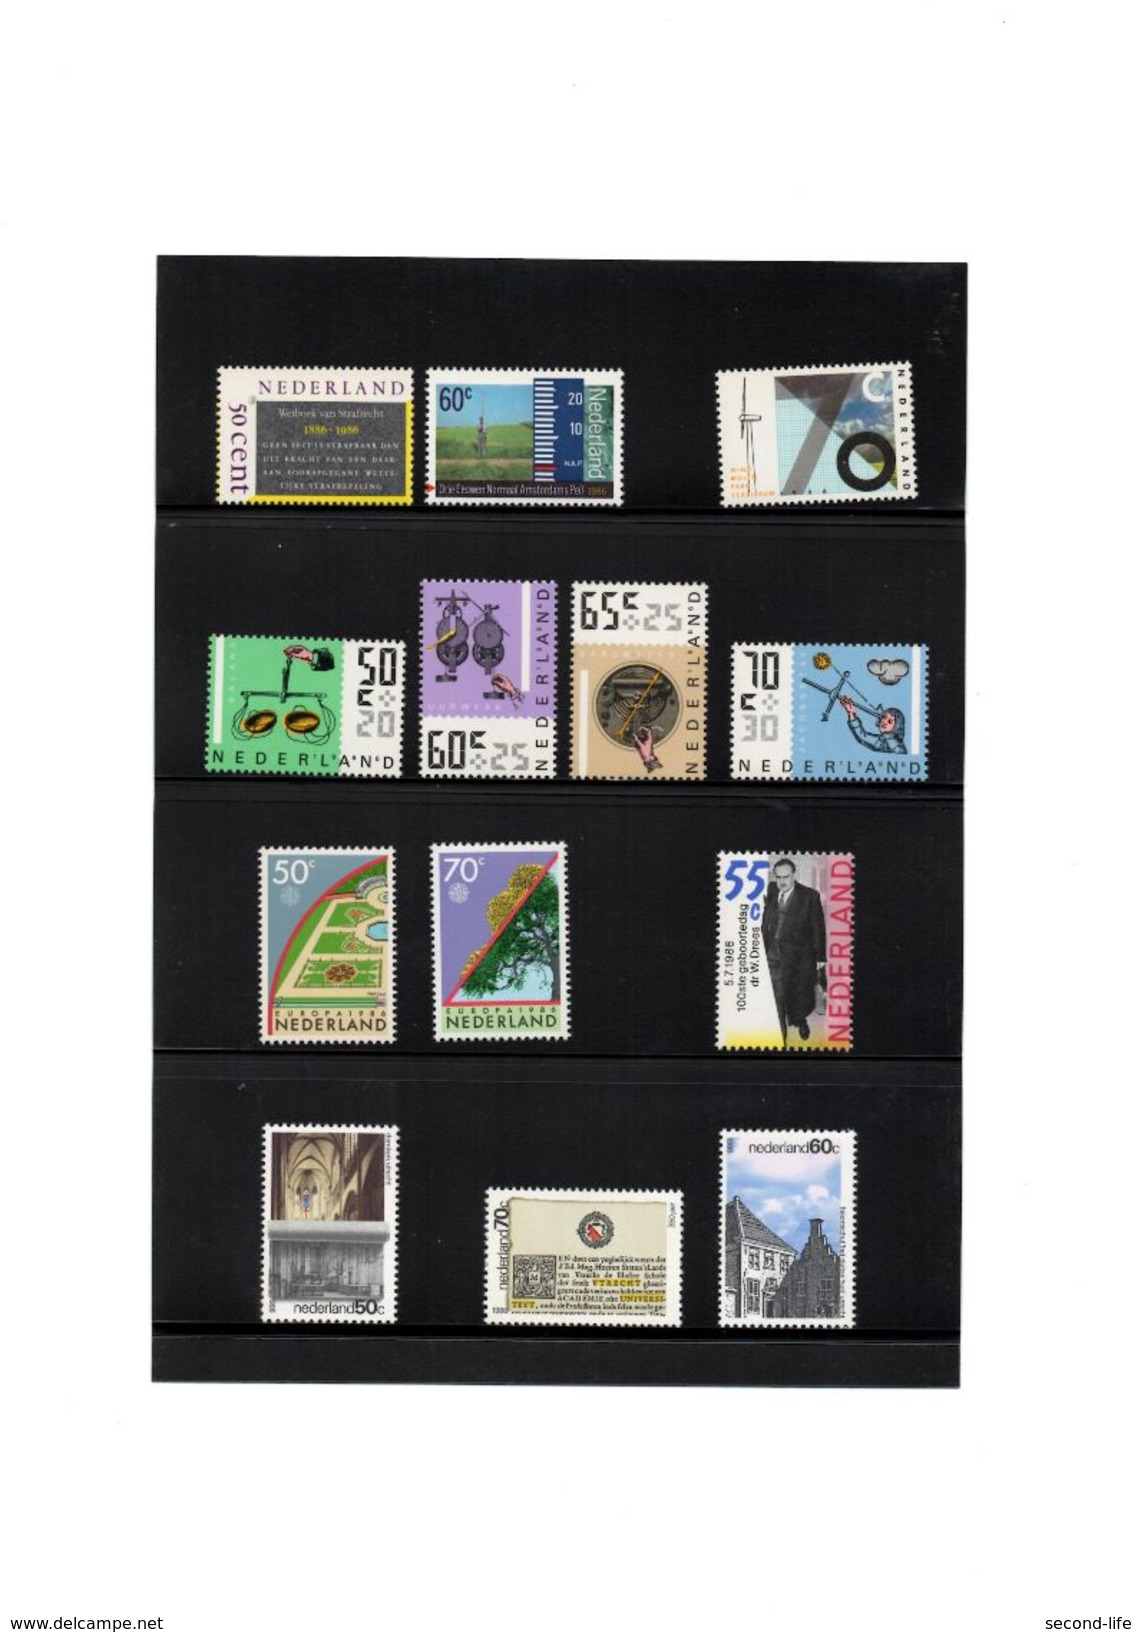 Jaarcollectie Nederlandse Postzegels - Full Years